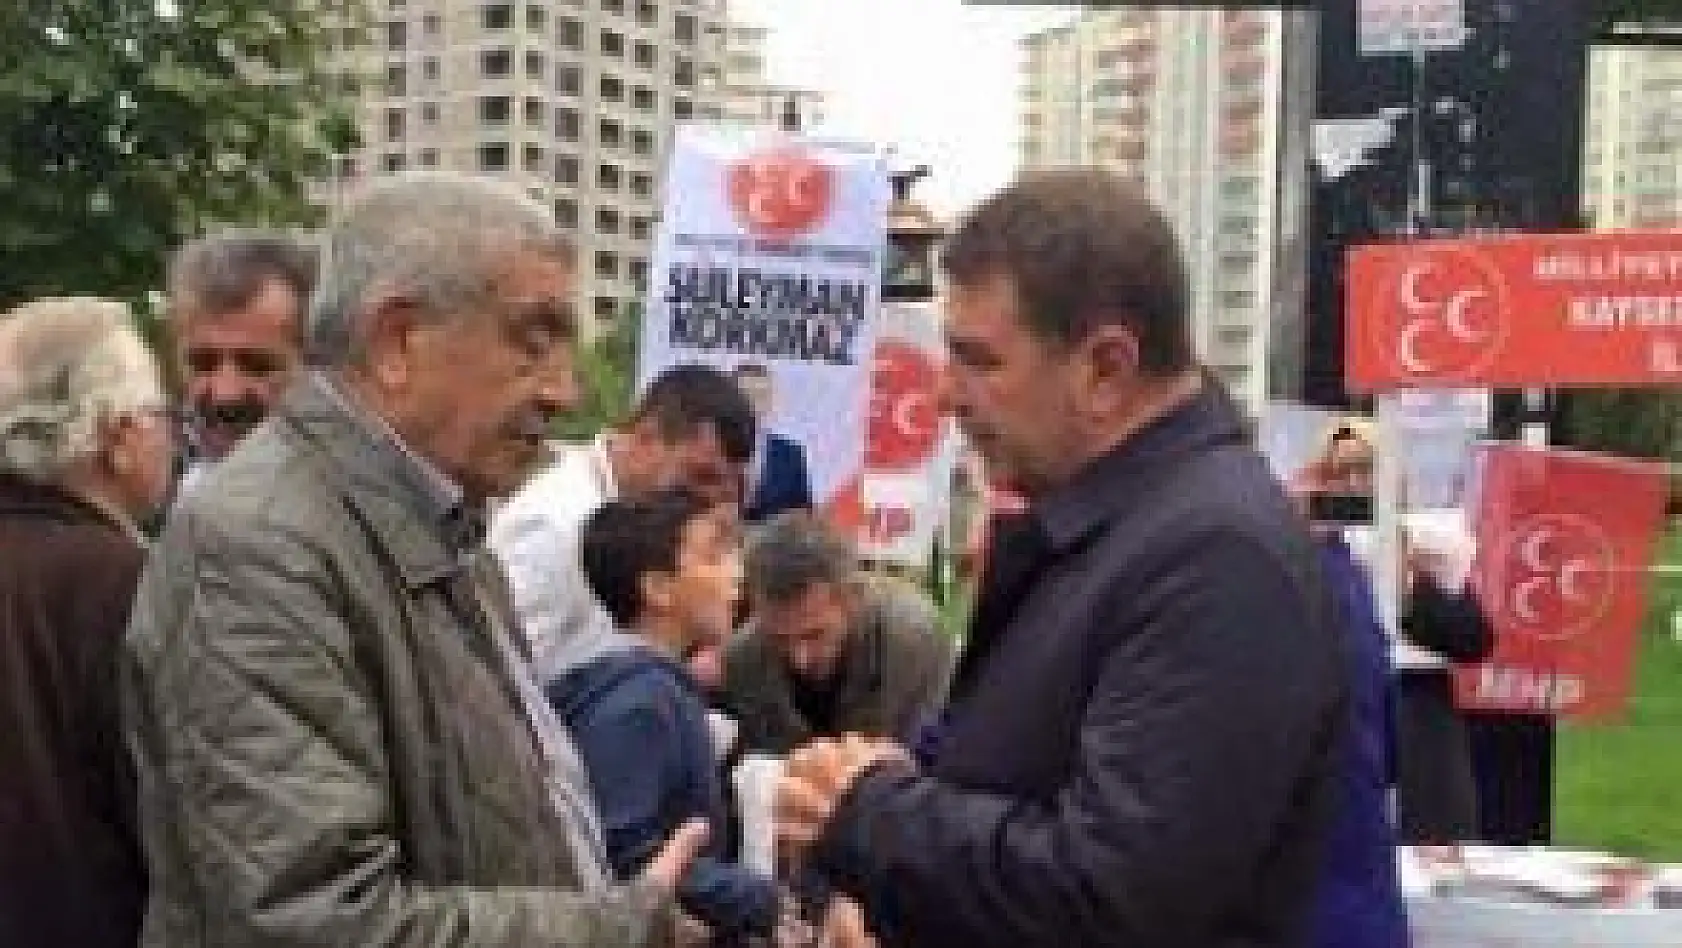  KORKMAZ: 'AKP'NİN VAATLERİ YALAN, ADAYLARI ALDATAN, YOK ARTIK BU AKP'YE KANAN'